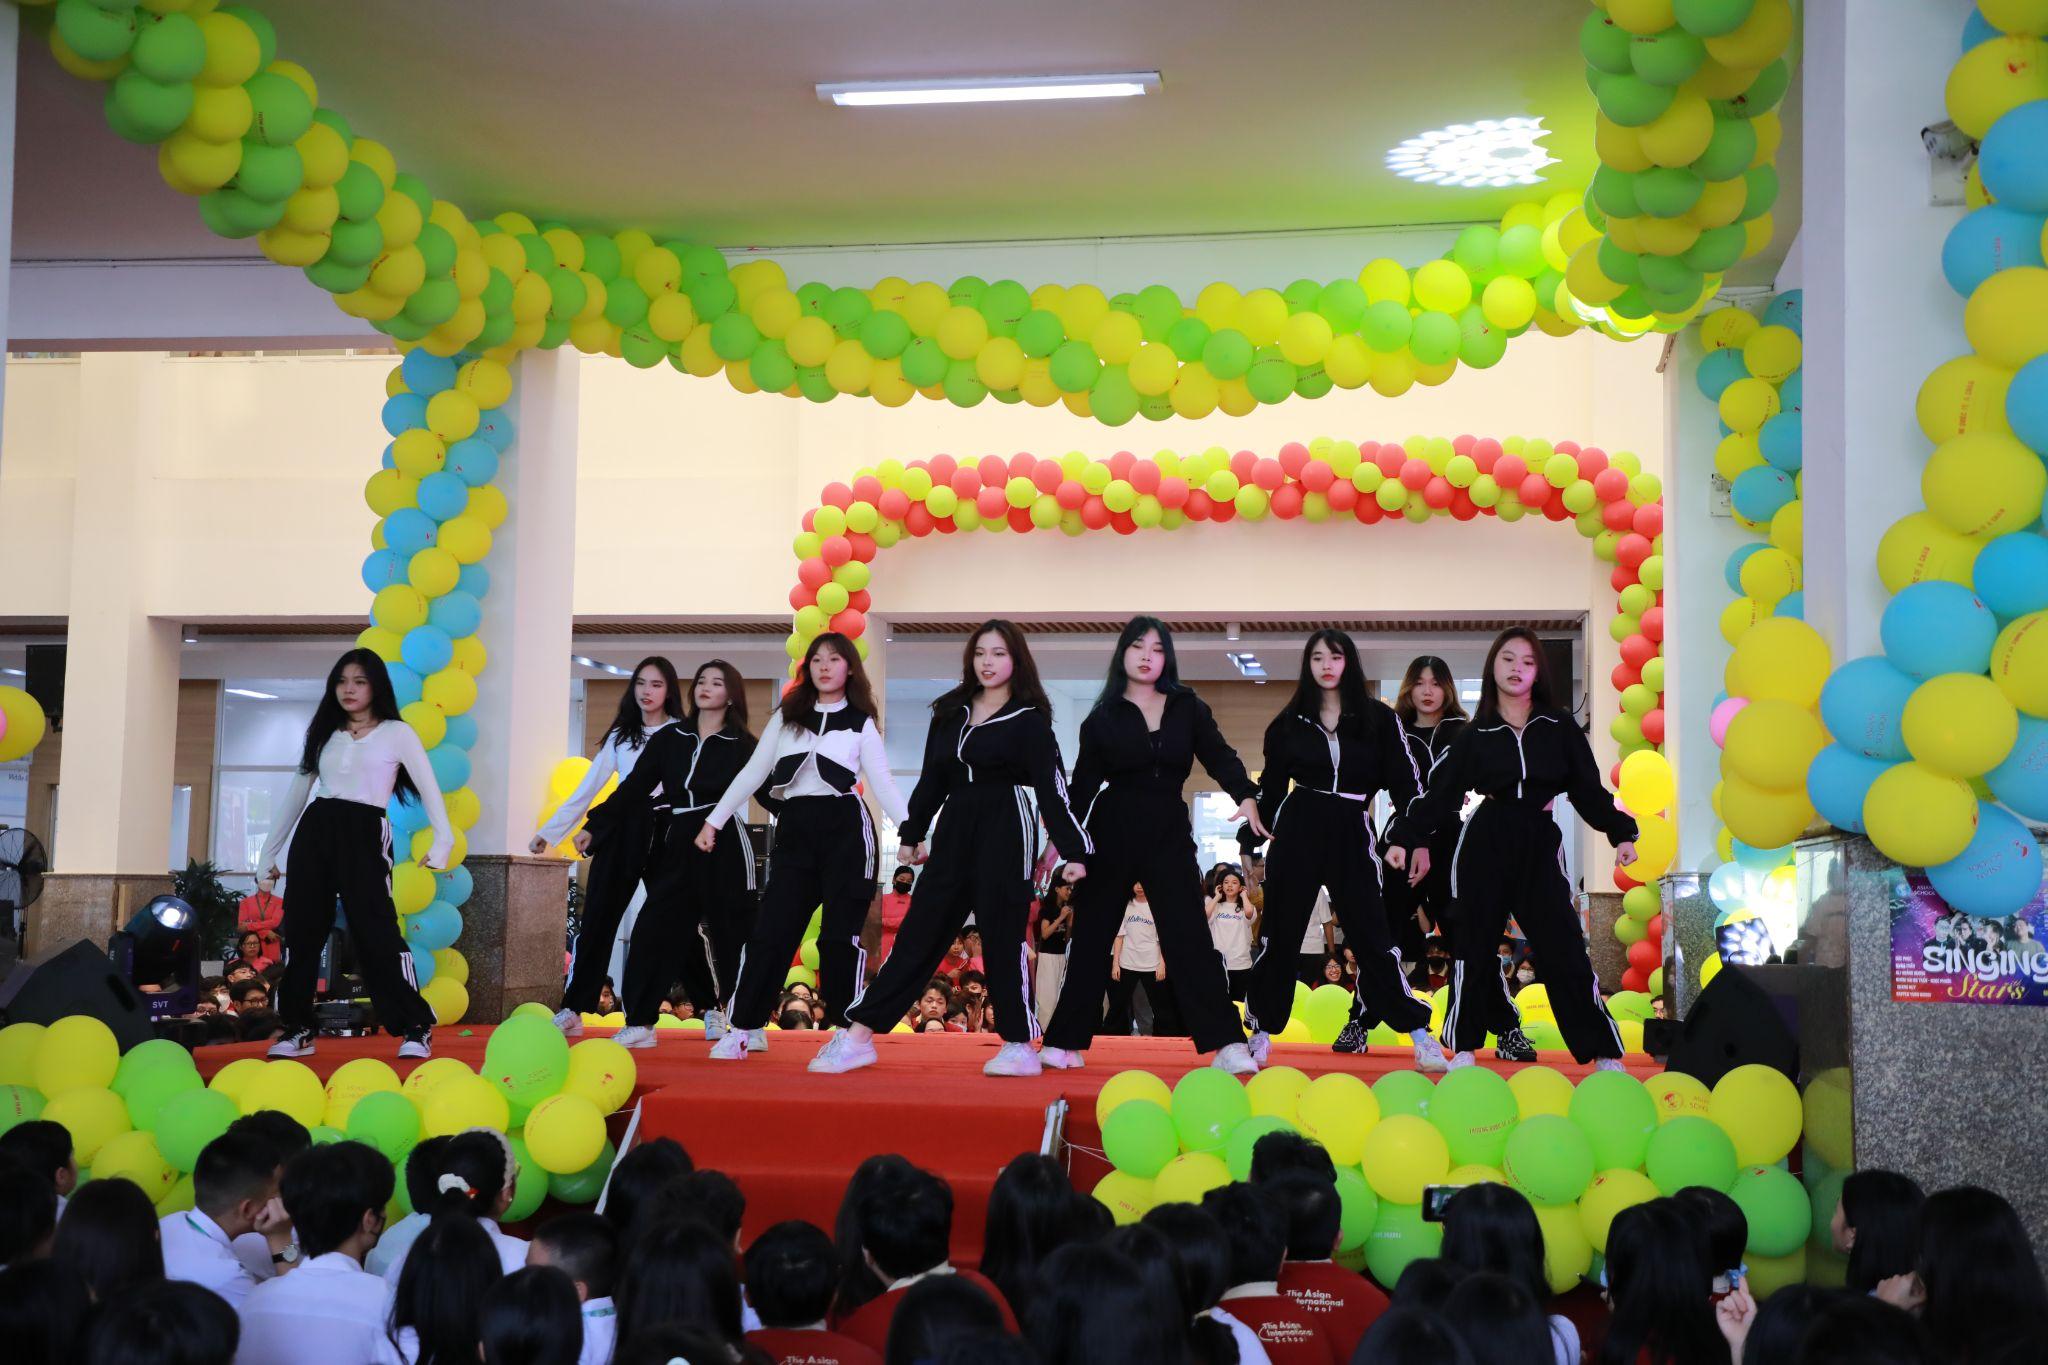 Asian School “chơi lớn” mời dàn sao về giao lưu cùng học sinh